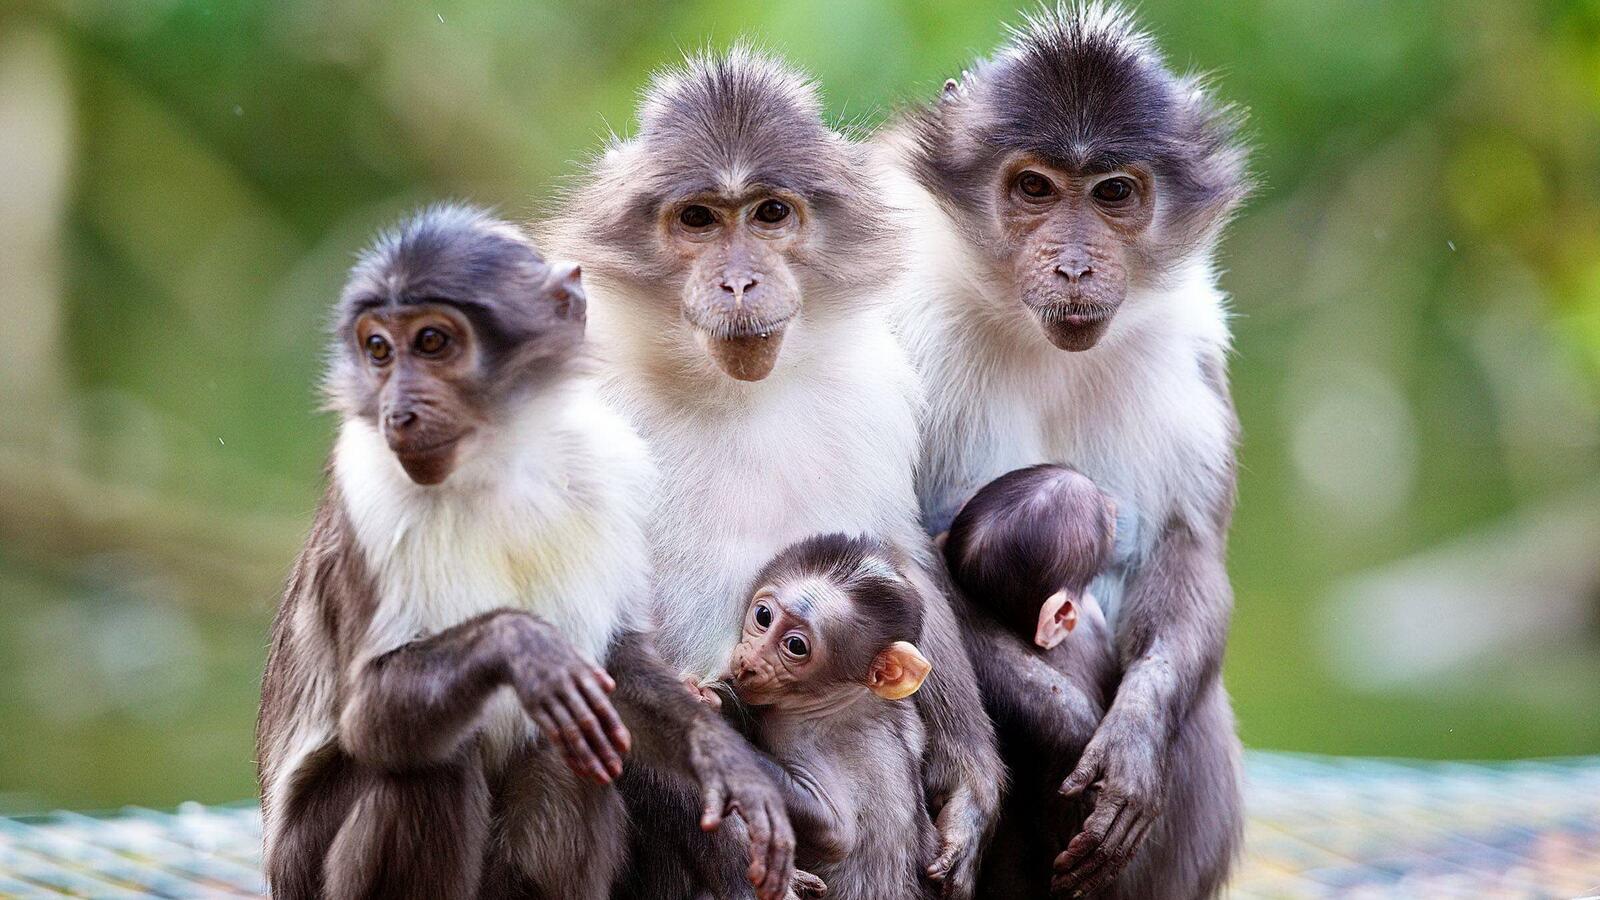 Обои макаки обезьяны семья на рабочий стол